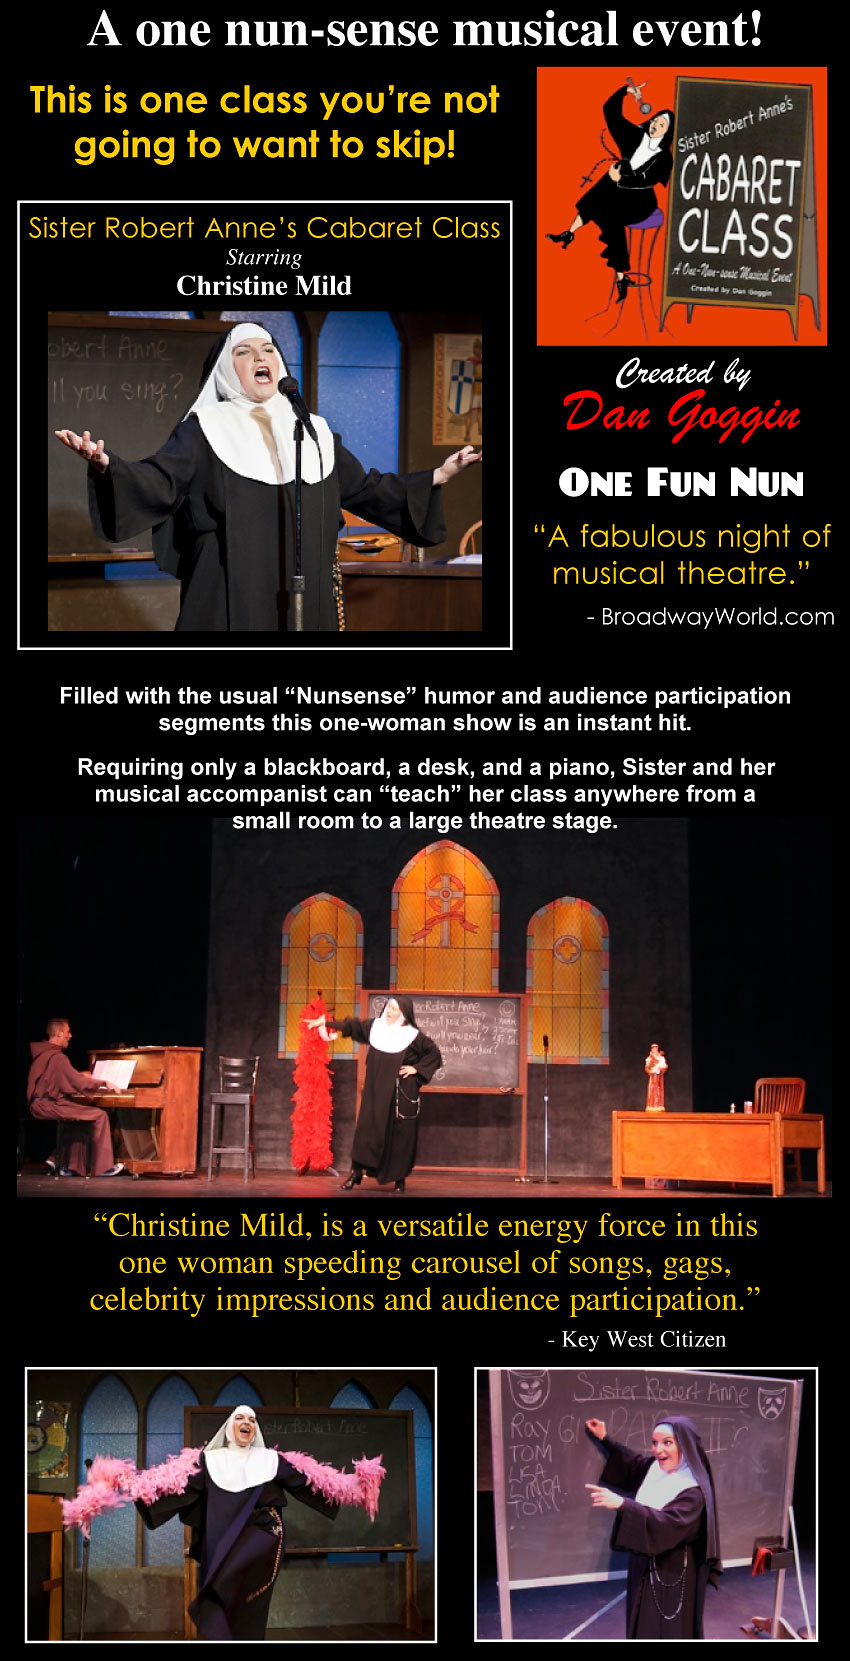 One Fun Nun